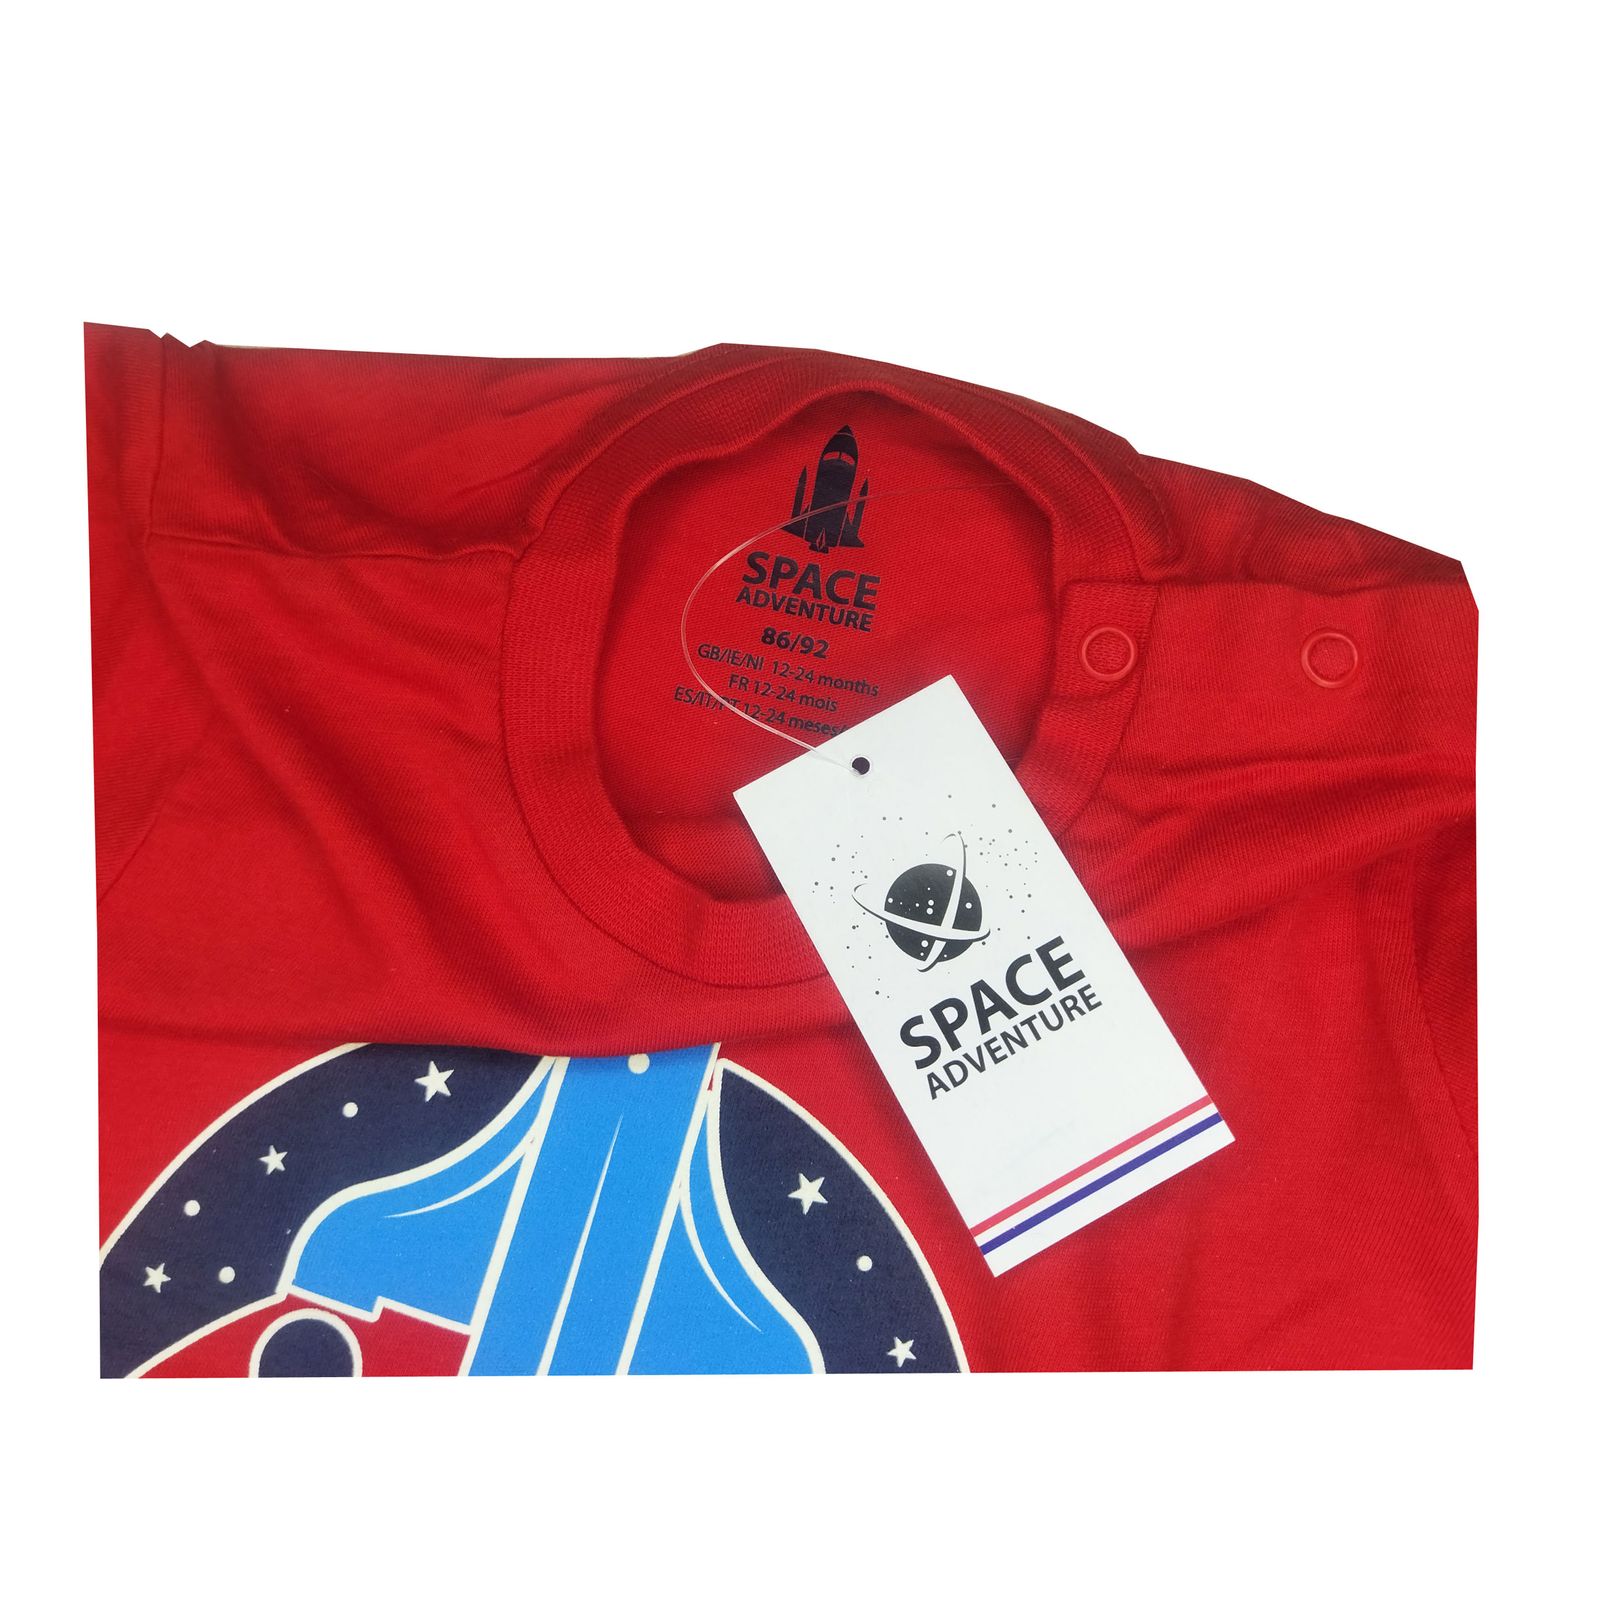 ست تی شرت و شلوارک پسرانه اسپیس مدل ناسا 54 -  - 5